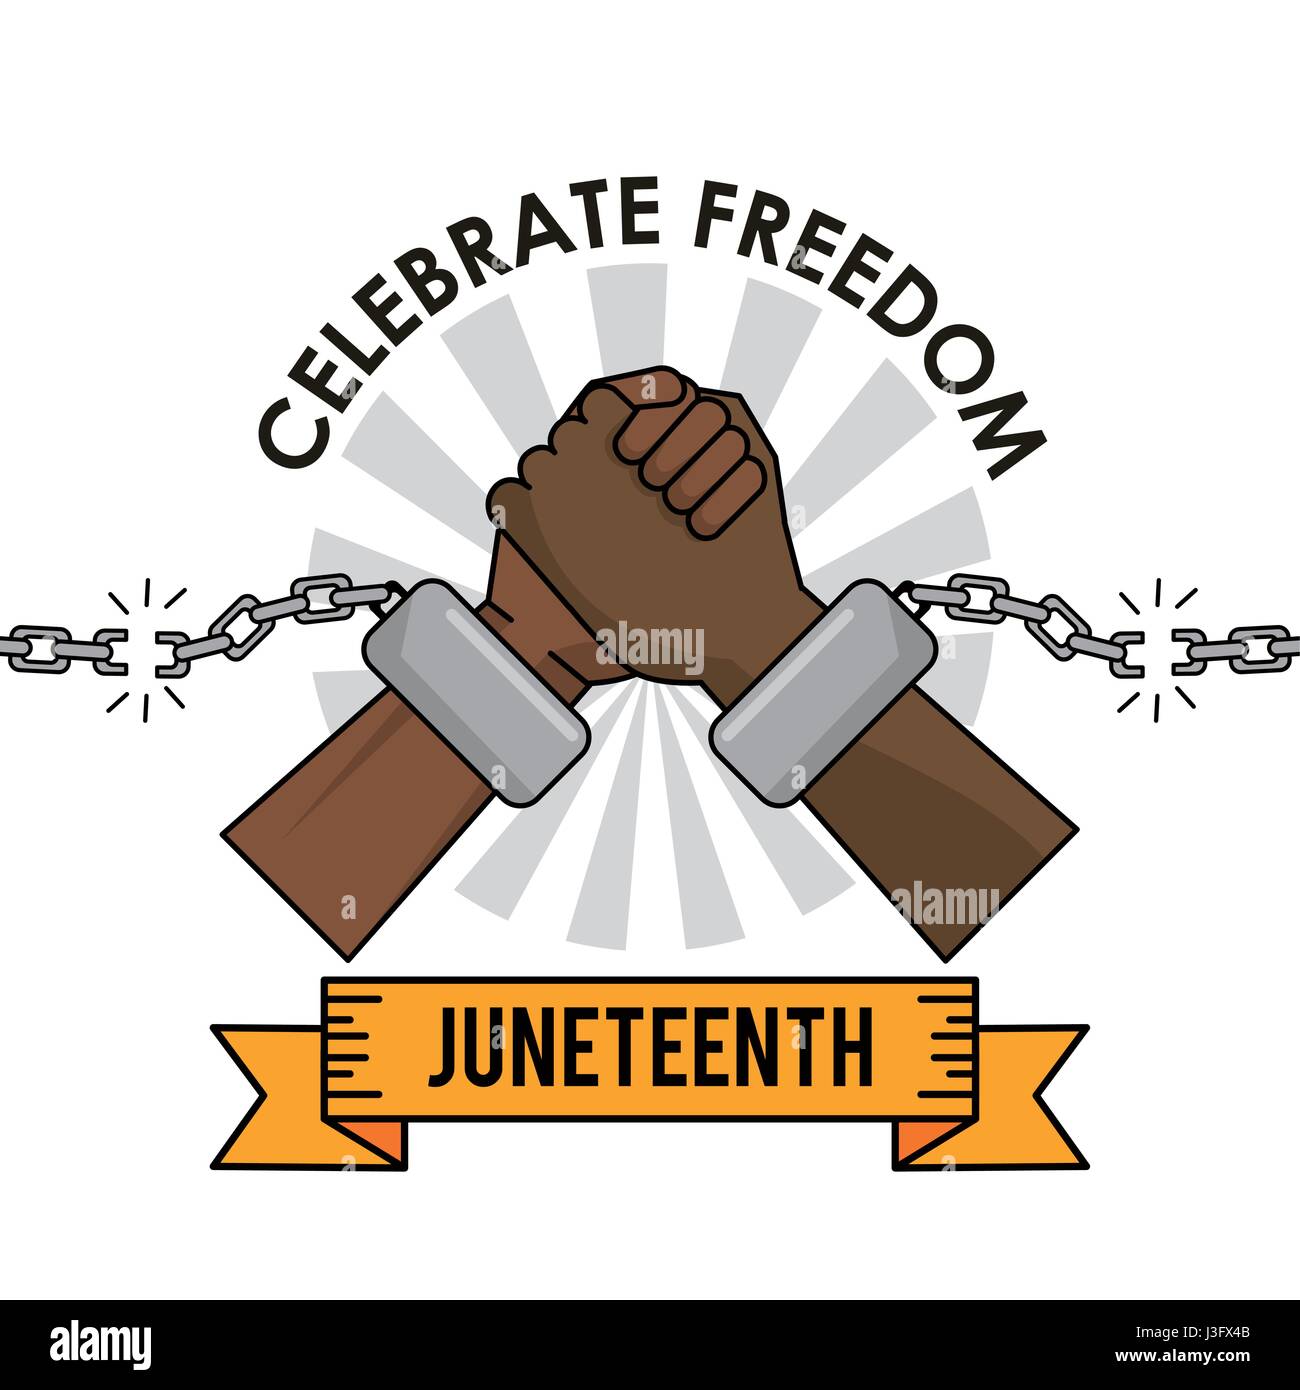 juneteenth day celebrate freedom broken chain hands Stock Vector